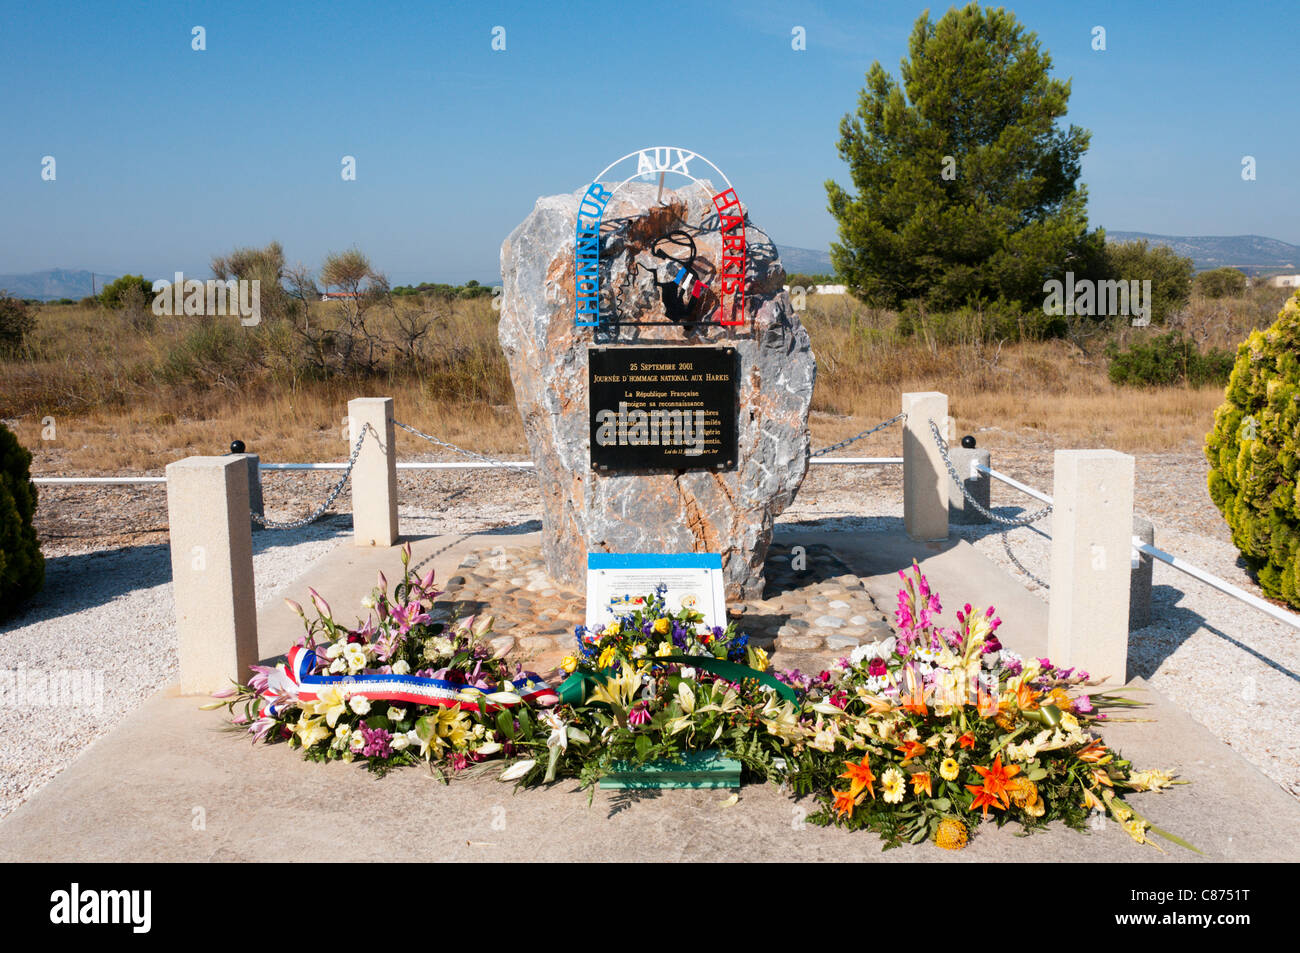 Mémorial à Harki réfugiés algériens au camp de Rivesaltes, dans le sud de la France. Voir la description pour plus de détails. Banque D'Images